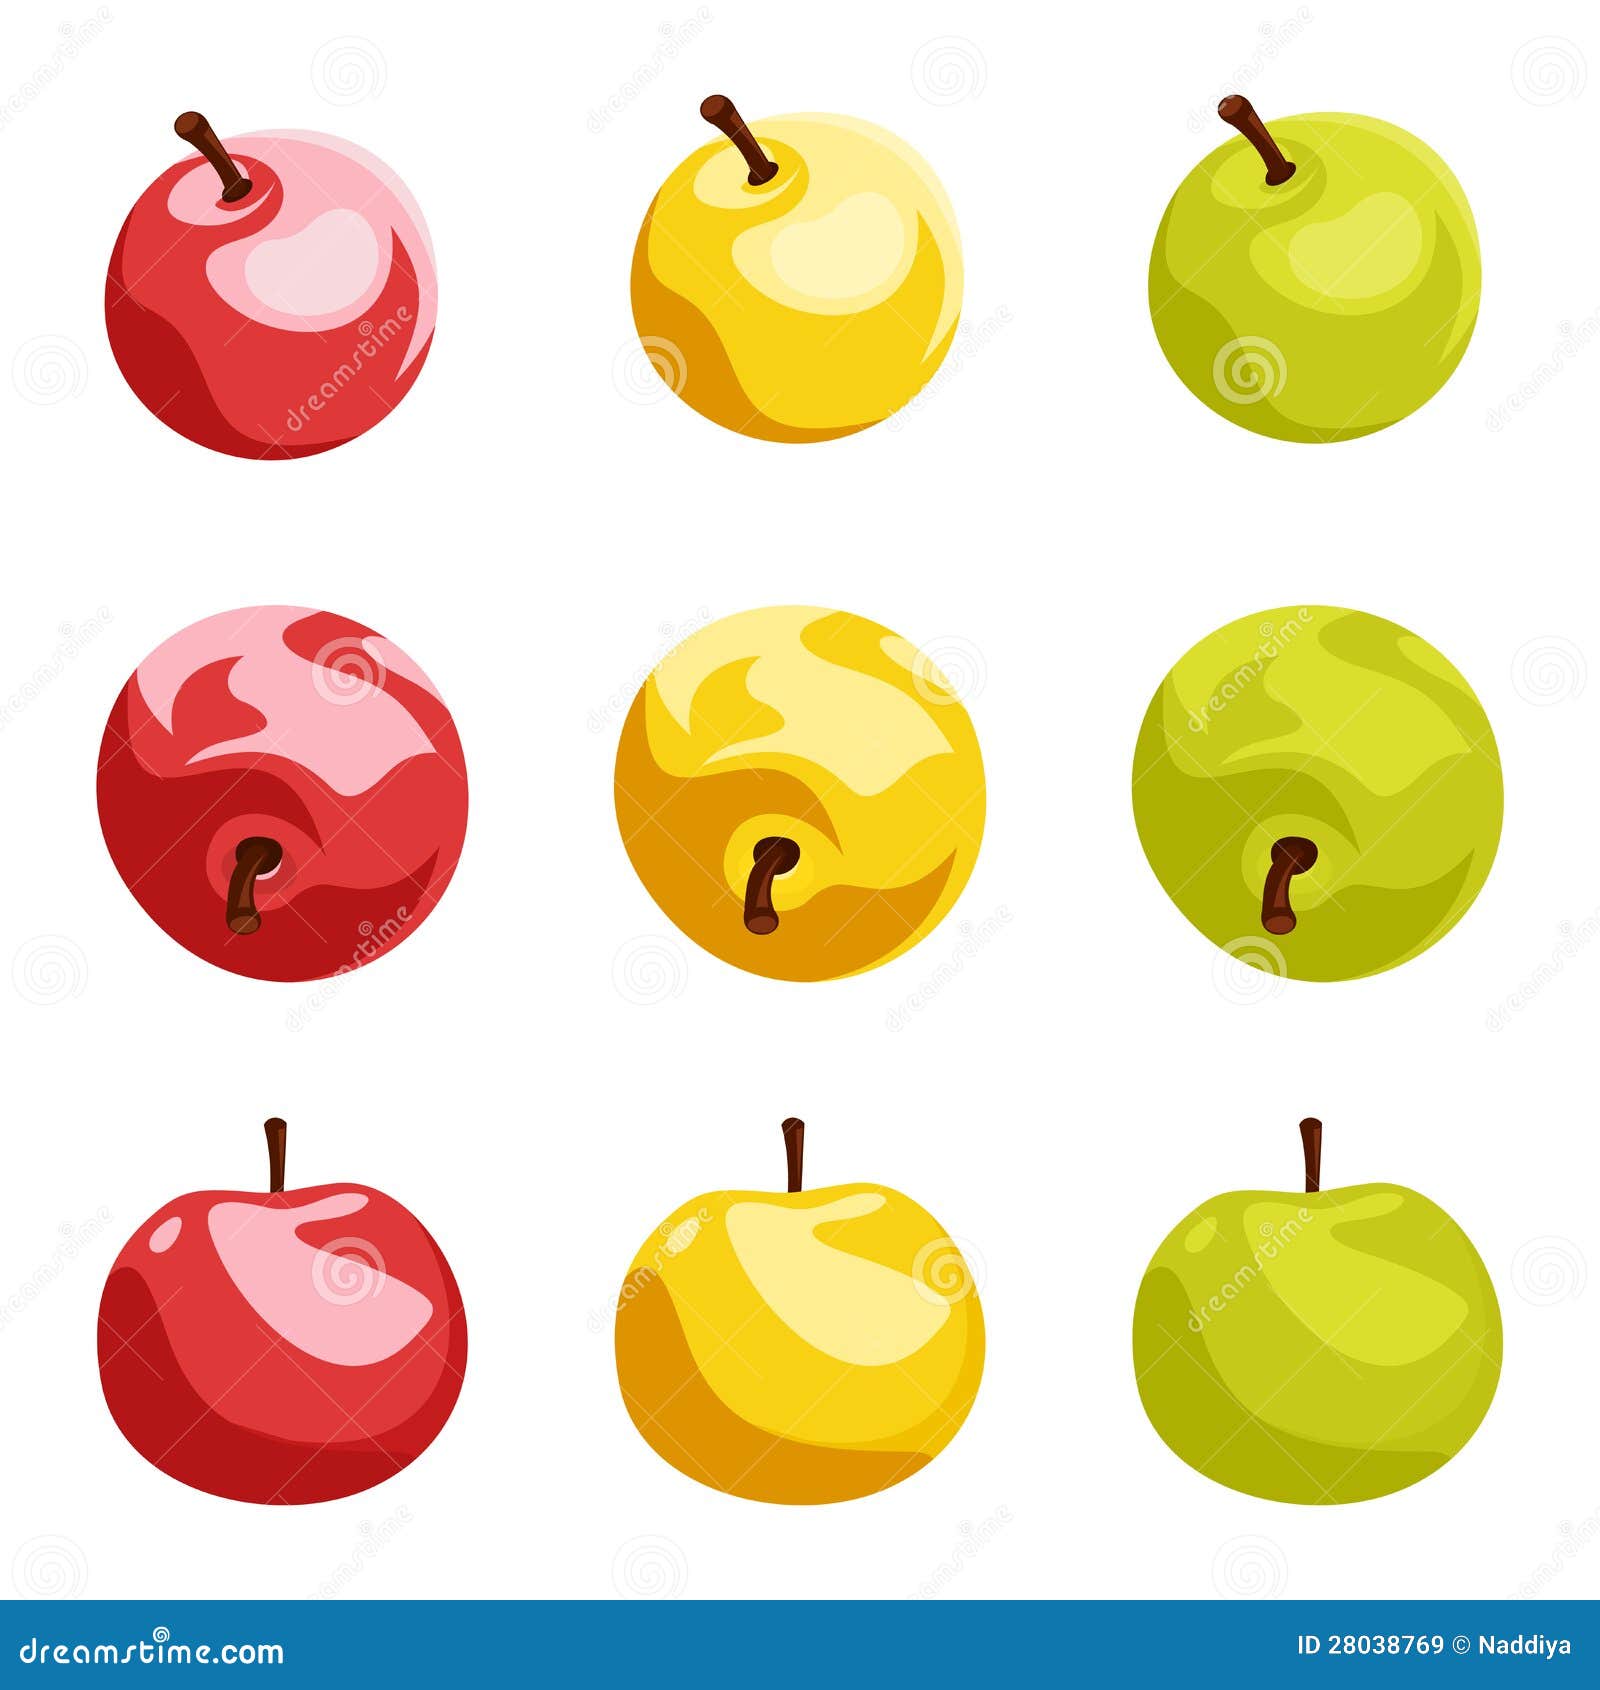 Девять предметов. 9 Яблок. Карточки с разноцветными яблоками. Яблоки 9 штук. 9 Яблок на белом фоне.